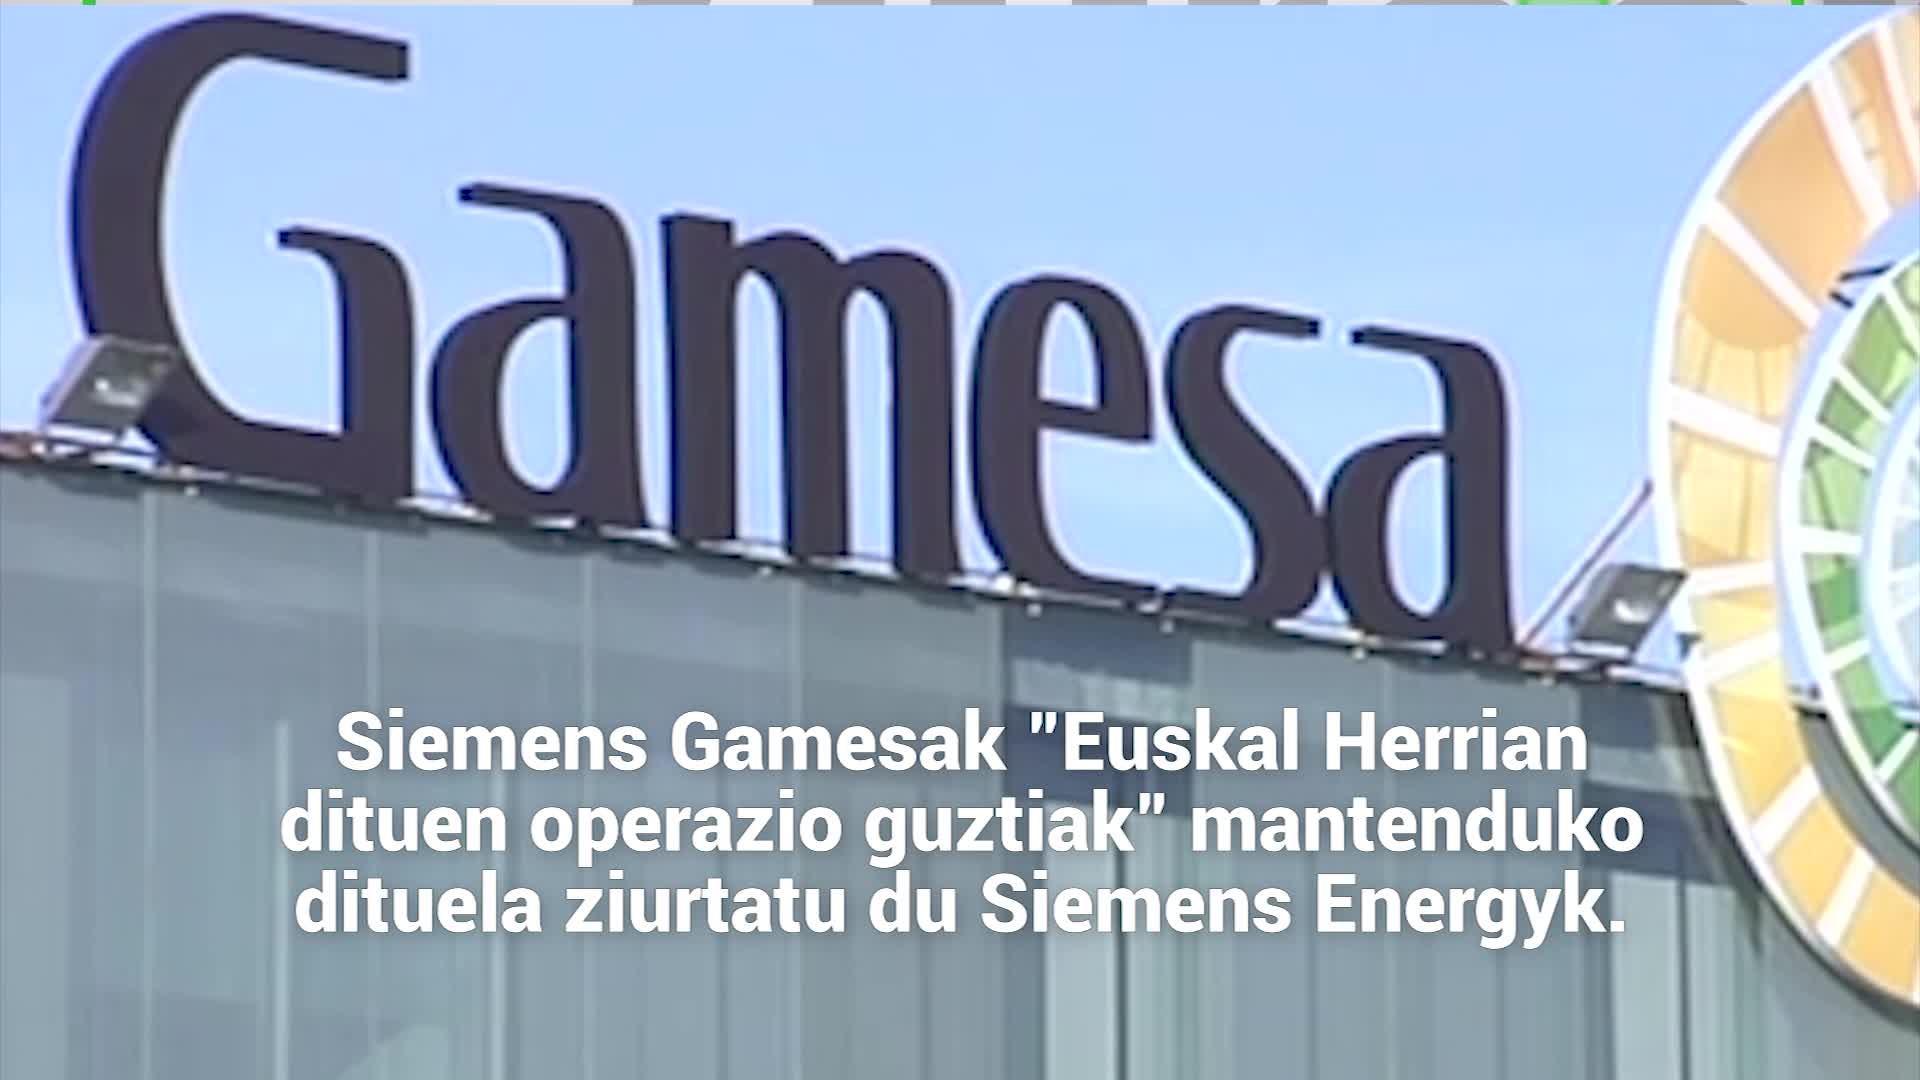 Siemens Energyren eskaintzaren inguruan informazio eza salatu dute sindikatuek